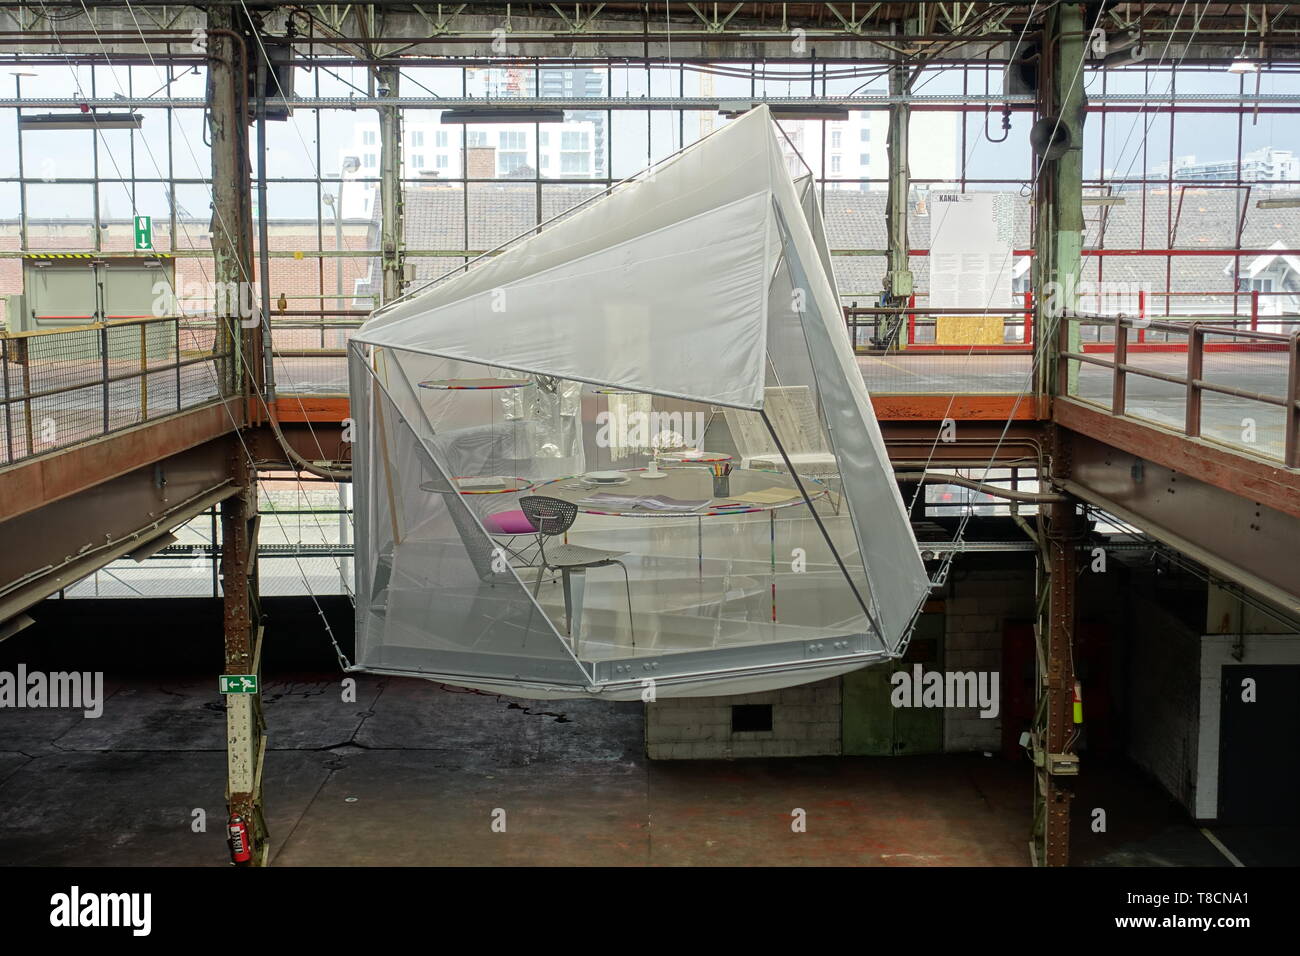 Brüssel, Garage Citroen, Centre Georges Pompidou Kanal, provisorische Öffnung der Hallen zwischen 2018 und Sommer 2019 vor dem Umbau zum multifunktion Stock Photo